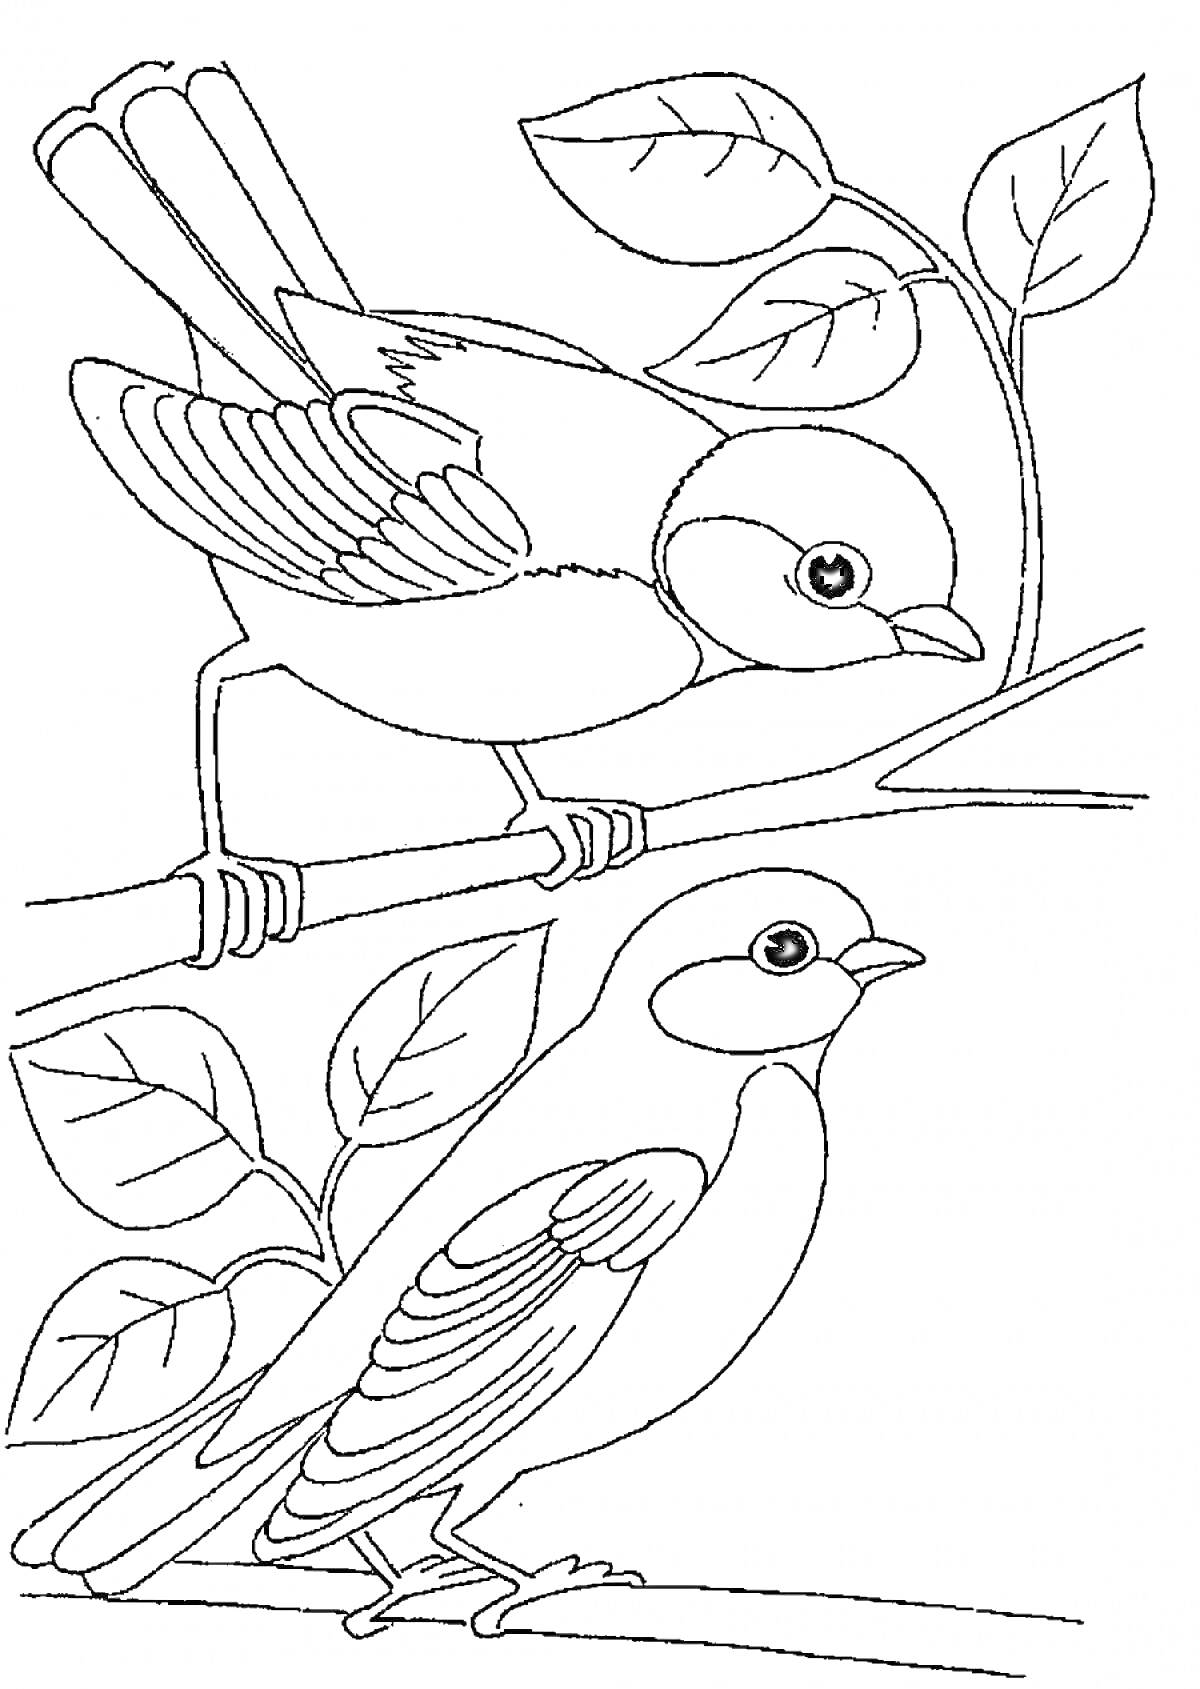 Раскраска Синицы на ветках с листьями